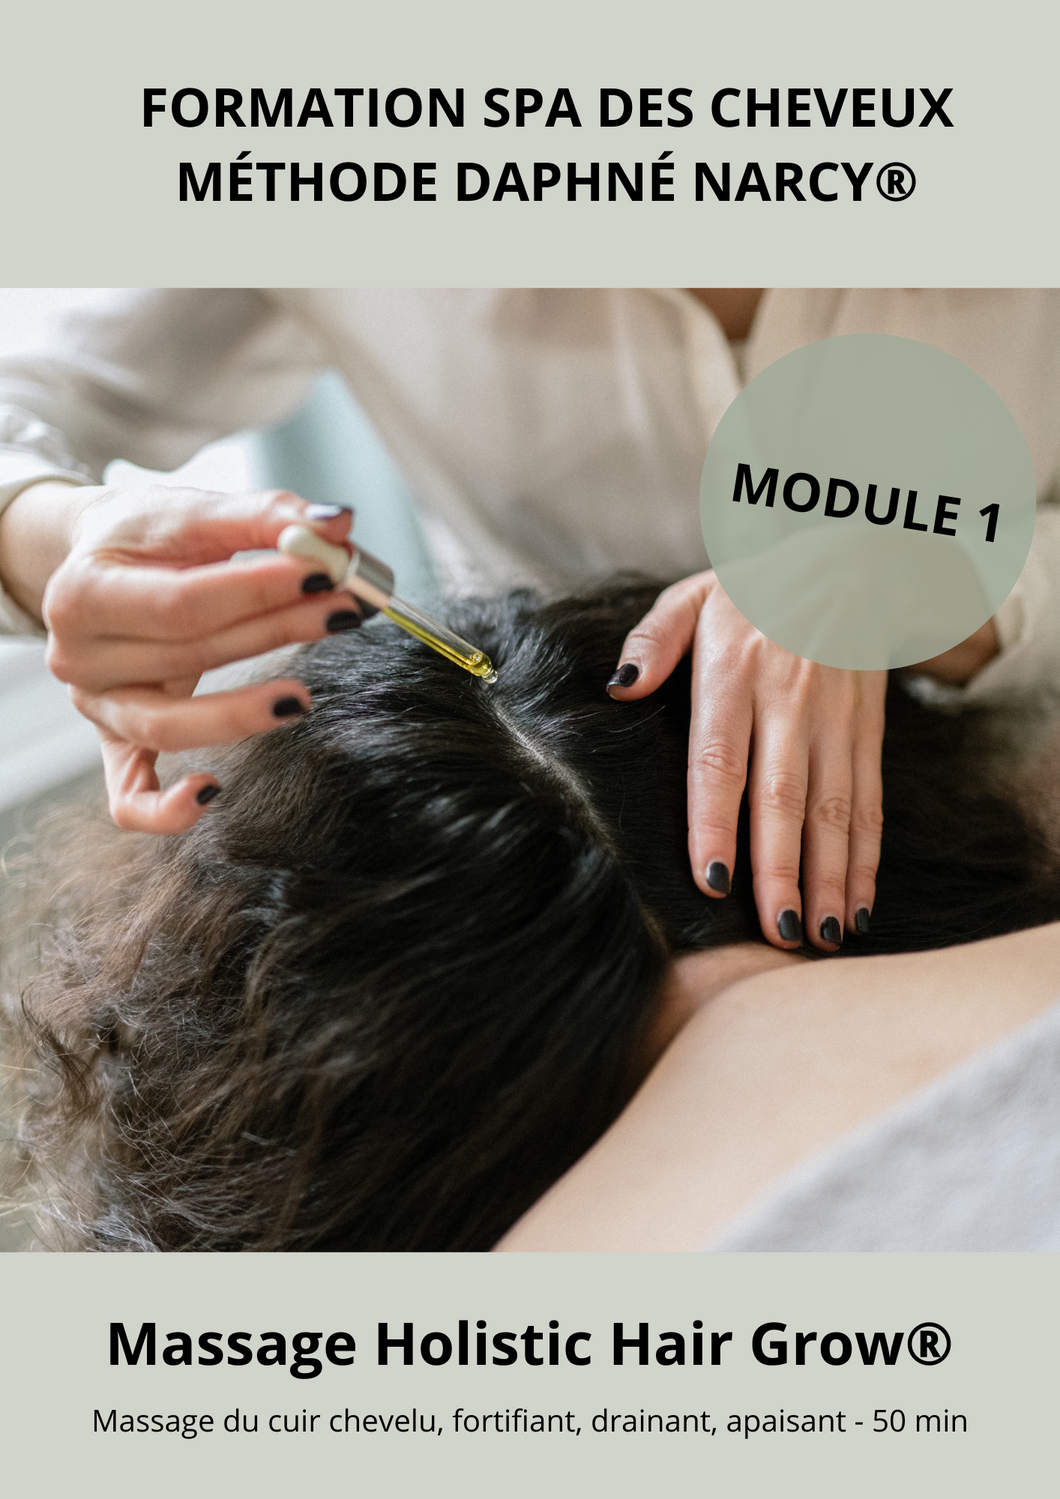 MODULE 1 - FORMATION SPA DES CHEVEUX-  MASSAGE HOLISTIC HAIR GROW®